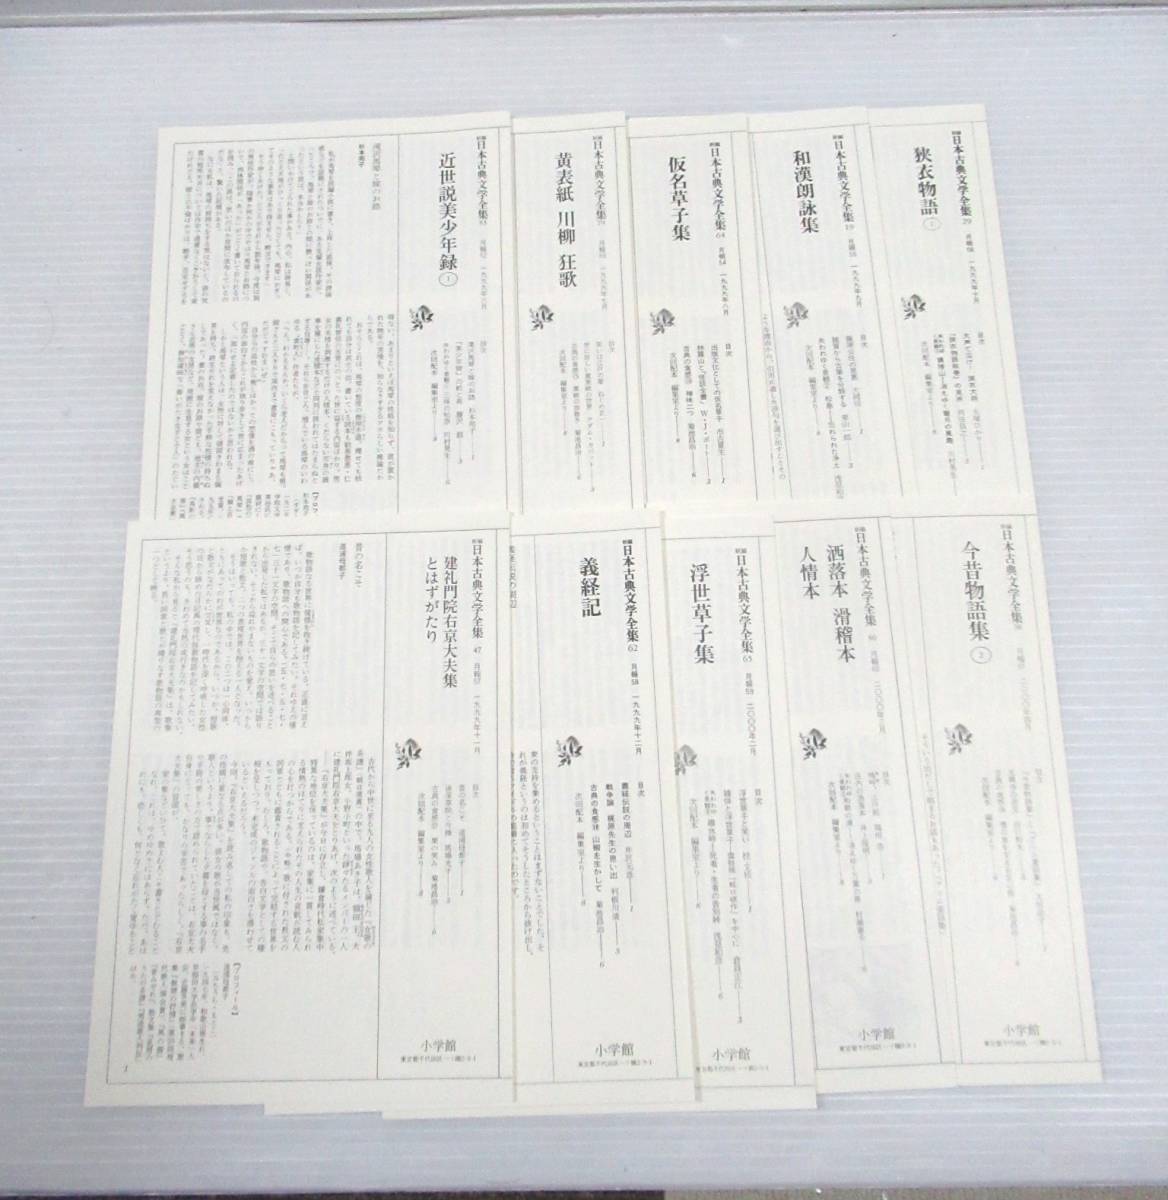 # новый сборник Япония классическая литература полное собрание сочинений [ месяц .] все 88 шт. средний 11 шт. нет. 77 шт. комплект Shogakukan Inc. [ контрольный номер 102]